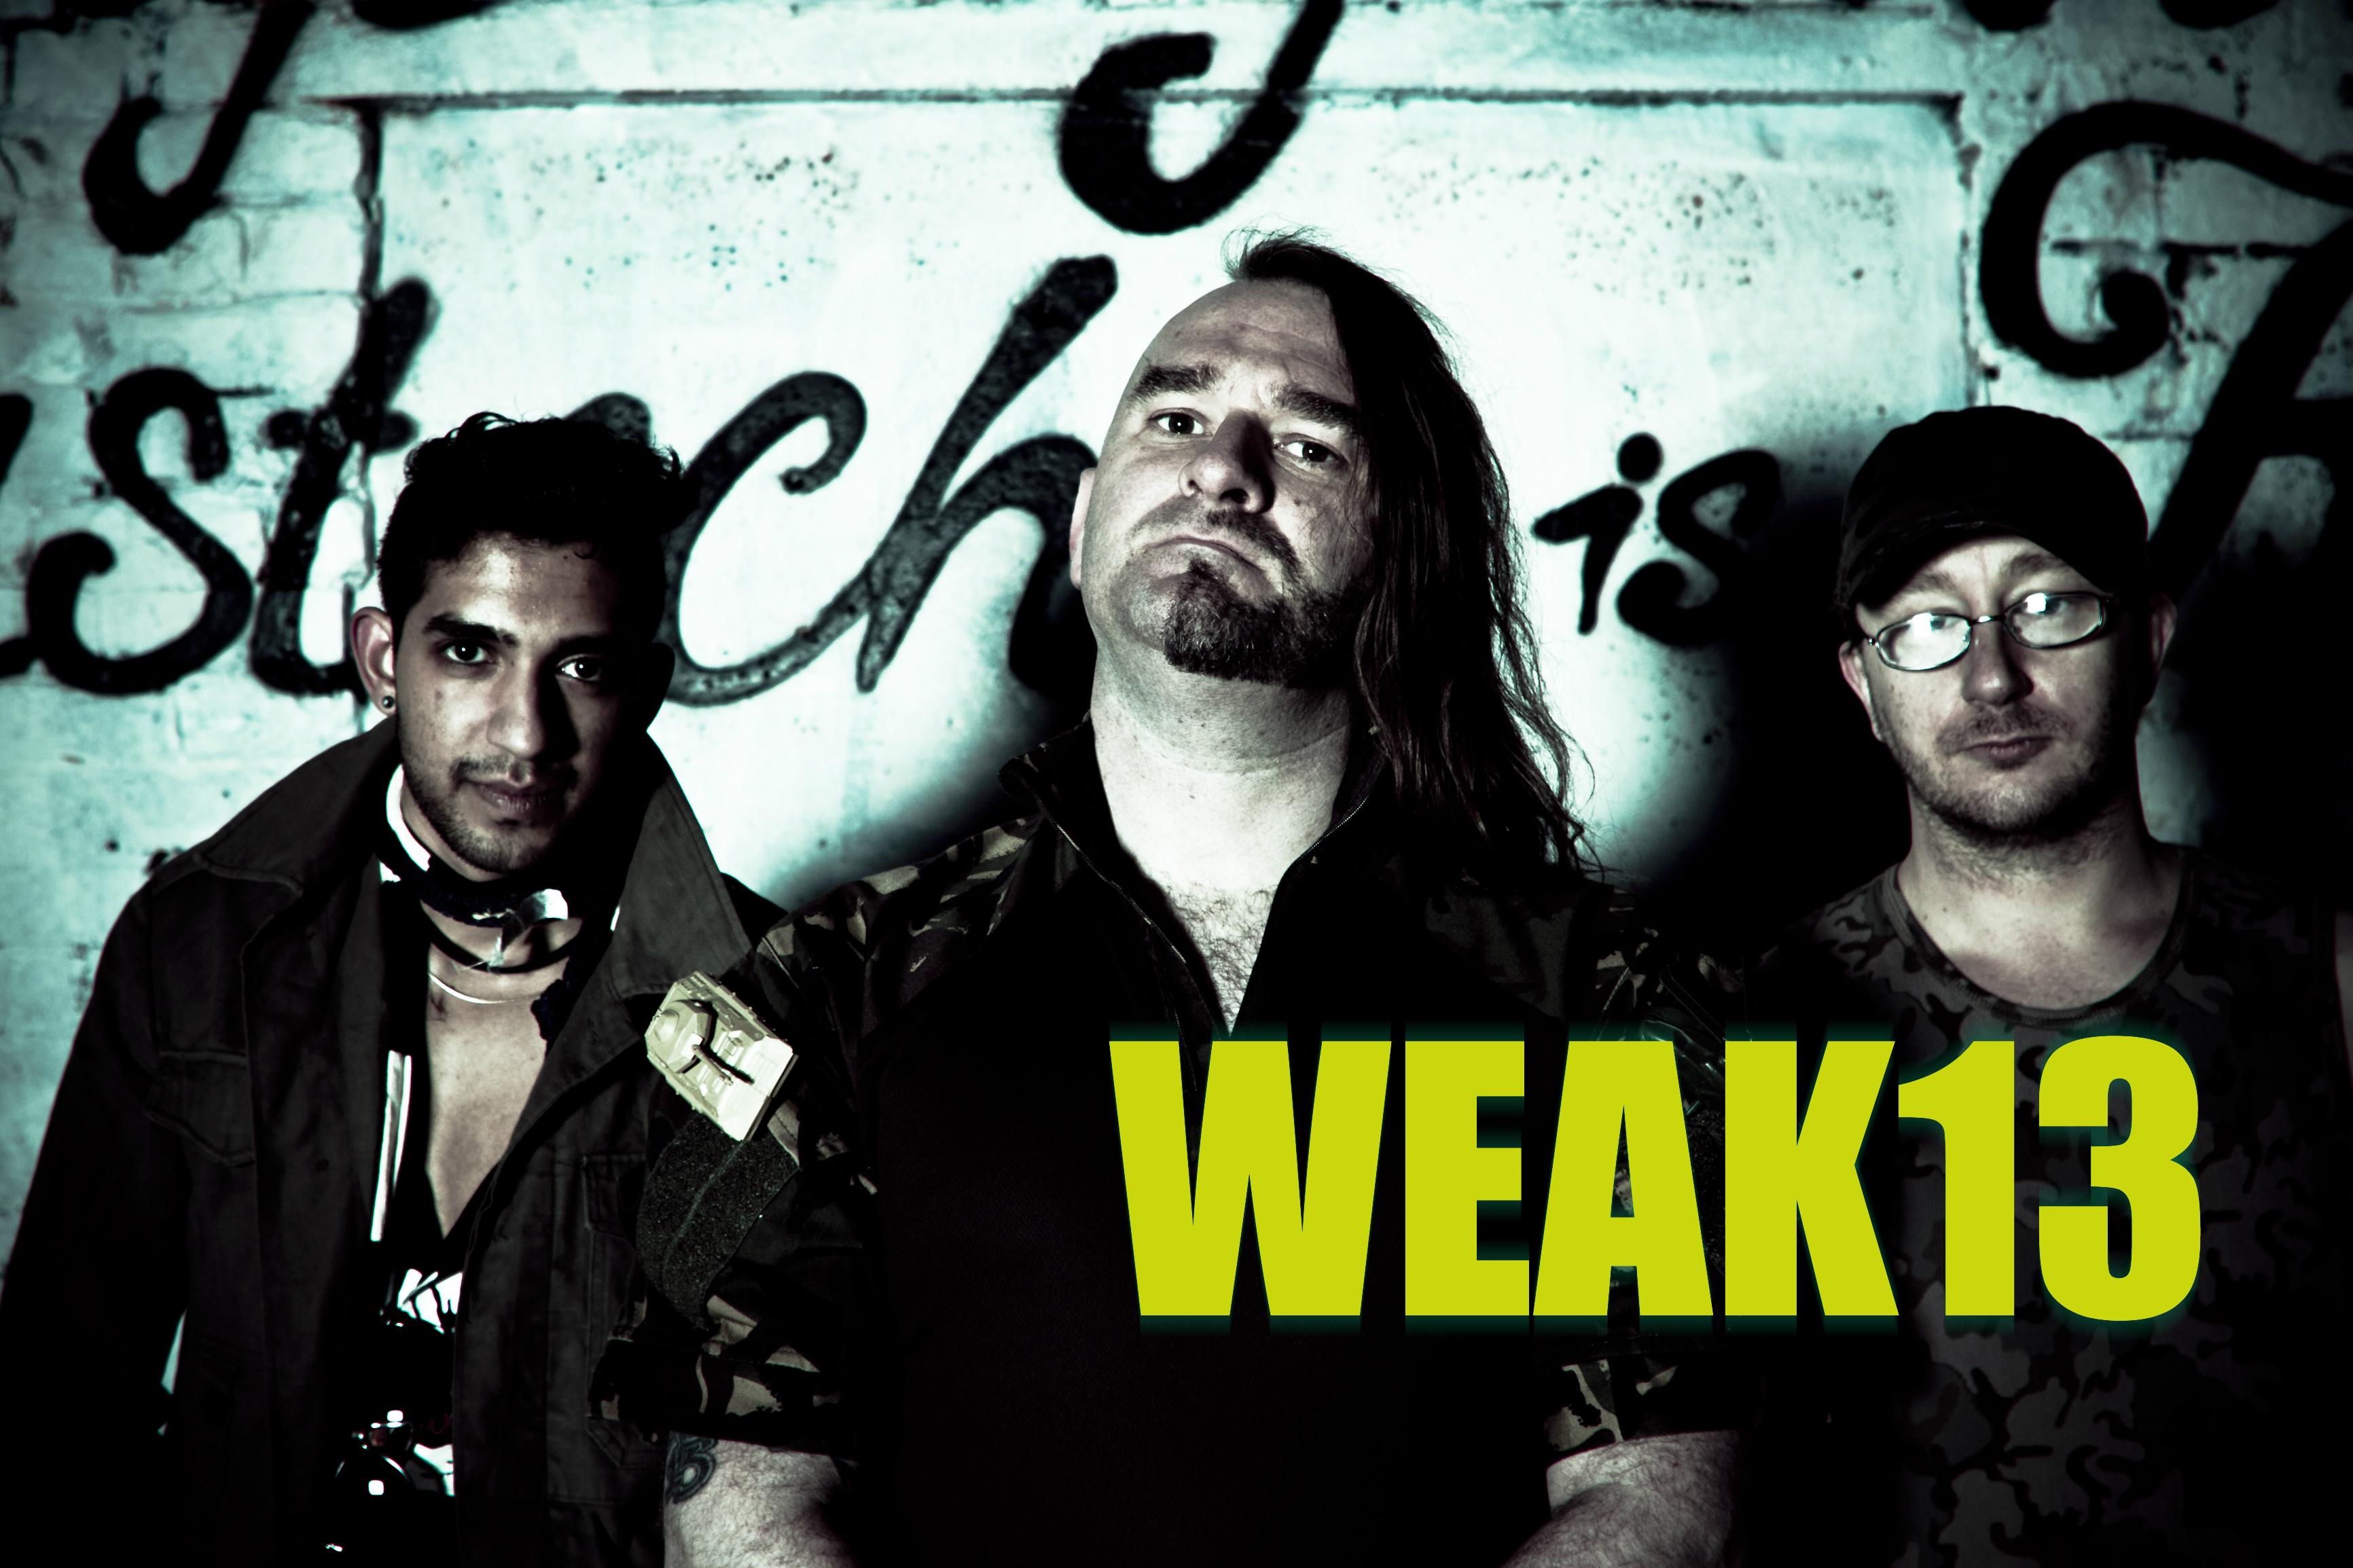 Grunge Metal Punk Rock Music Weak13 3464x2309